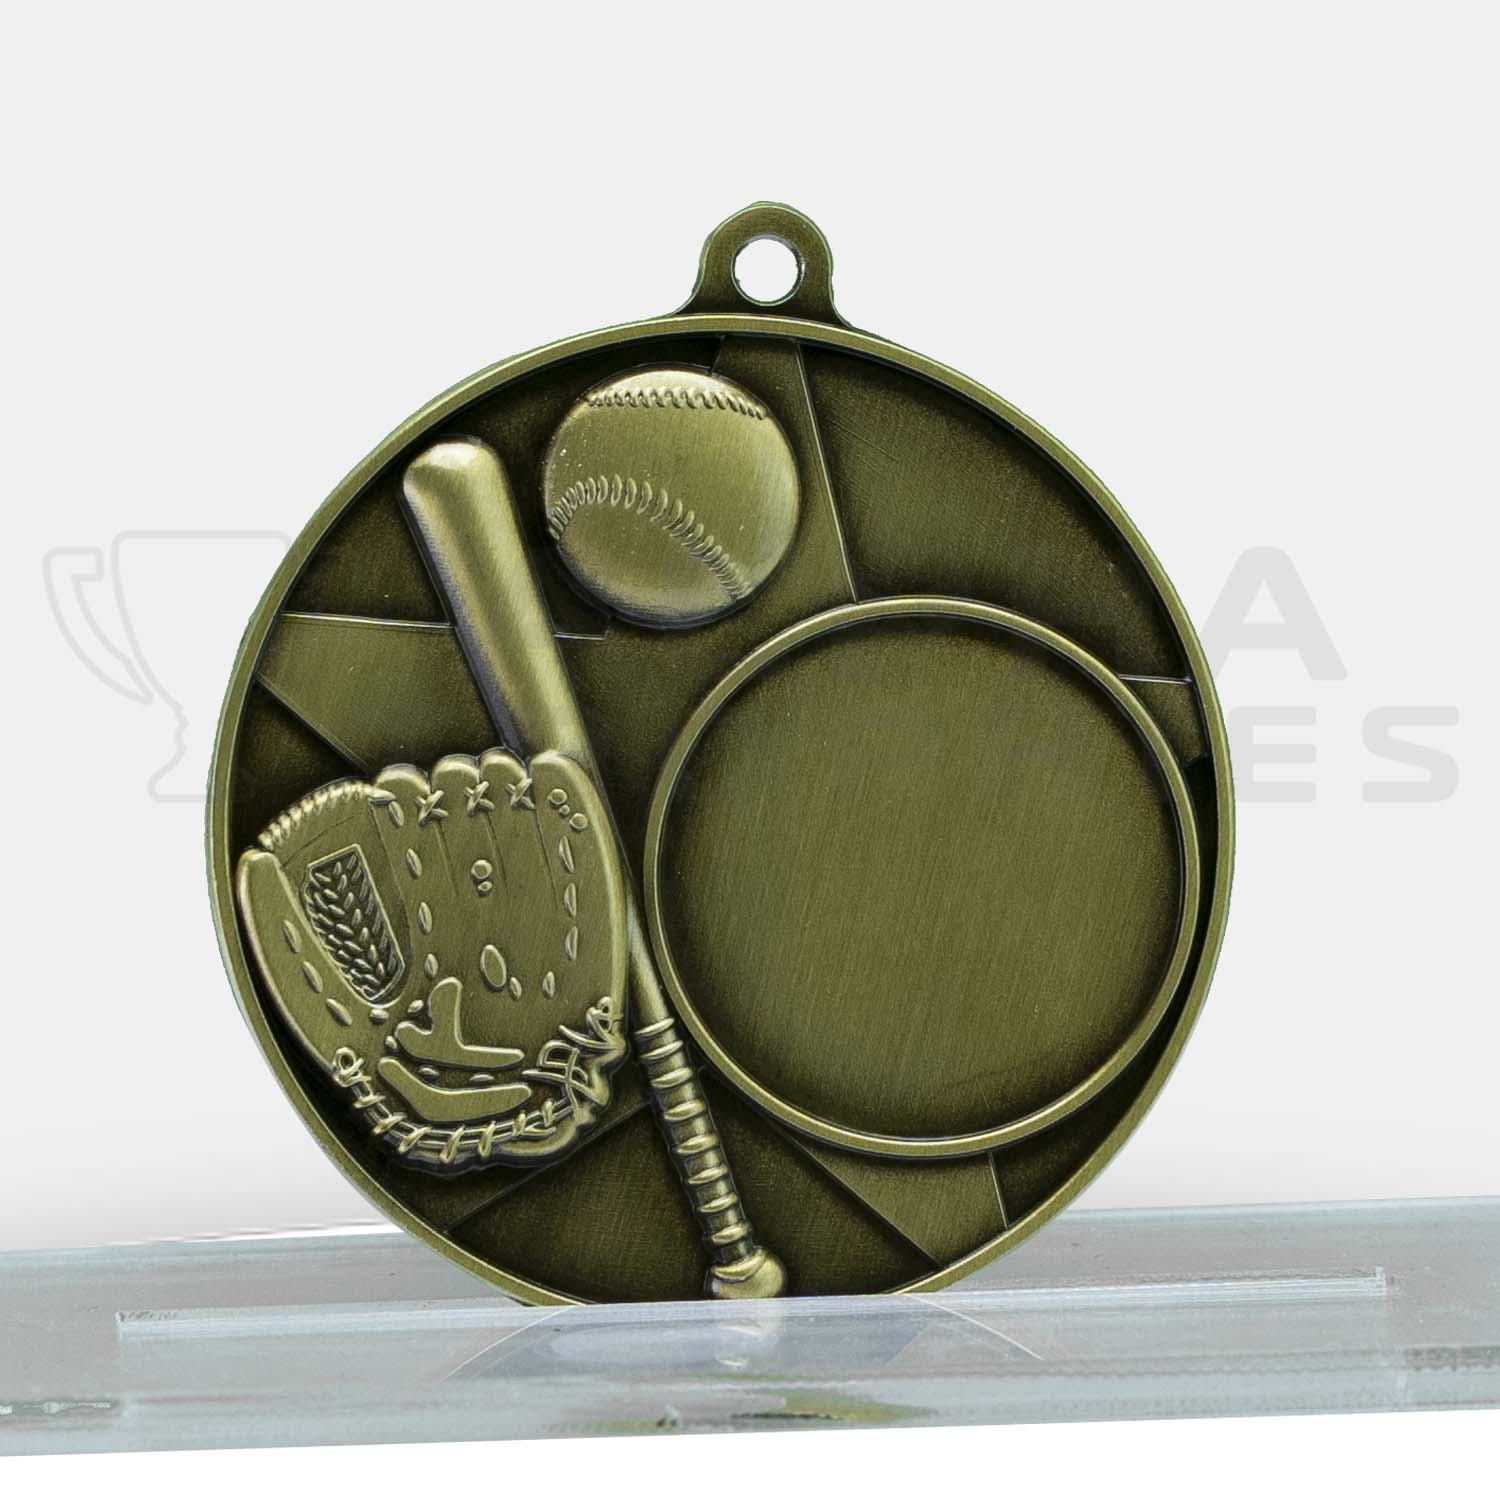 baseball-softball-topline-medal-gold-mz103g-front